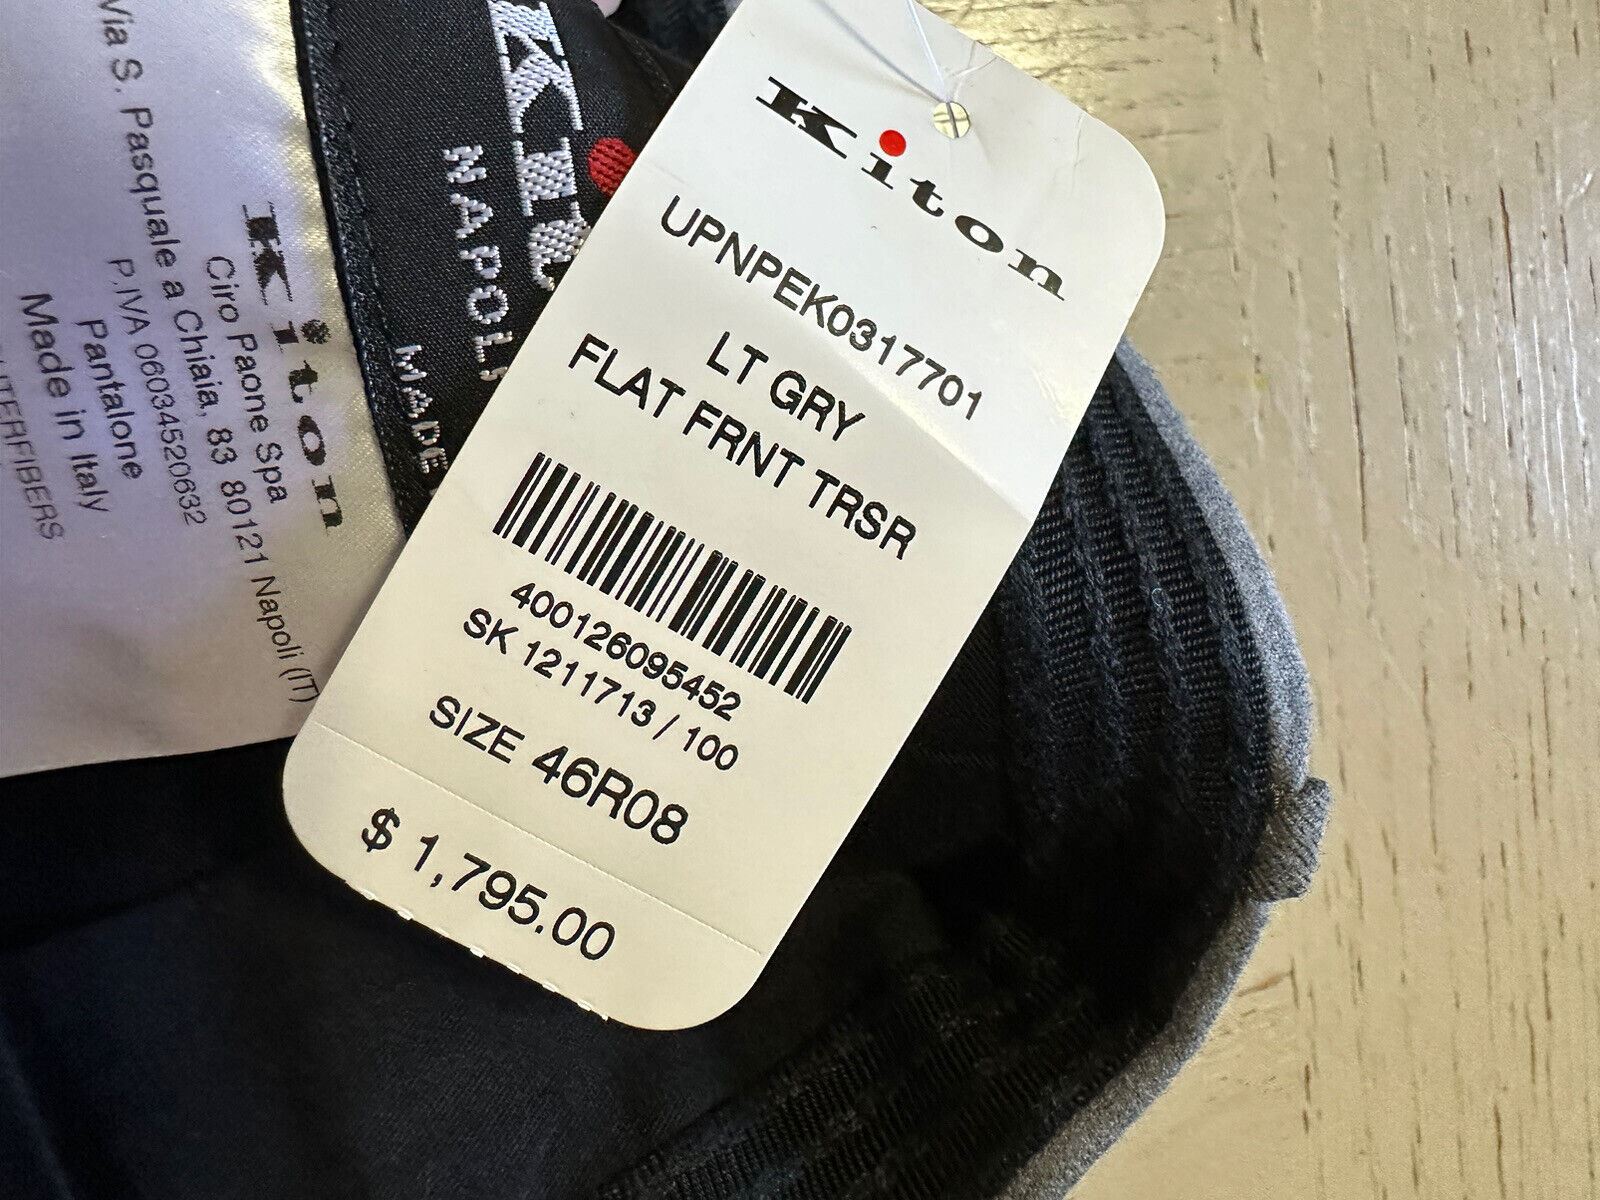 СЗТ $1795 Мужские классические брюки Kiton серые 30 США/46 ЕС Ручная работа в Италии